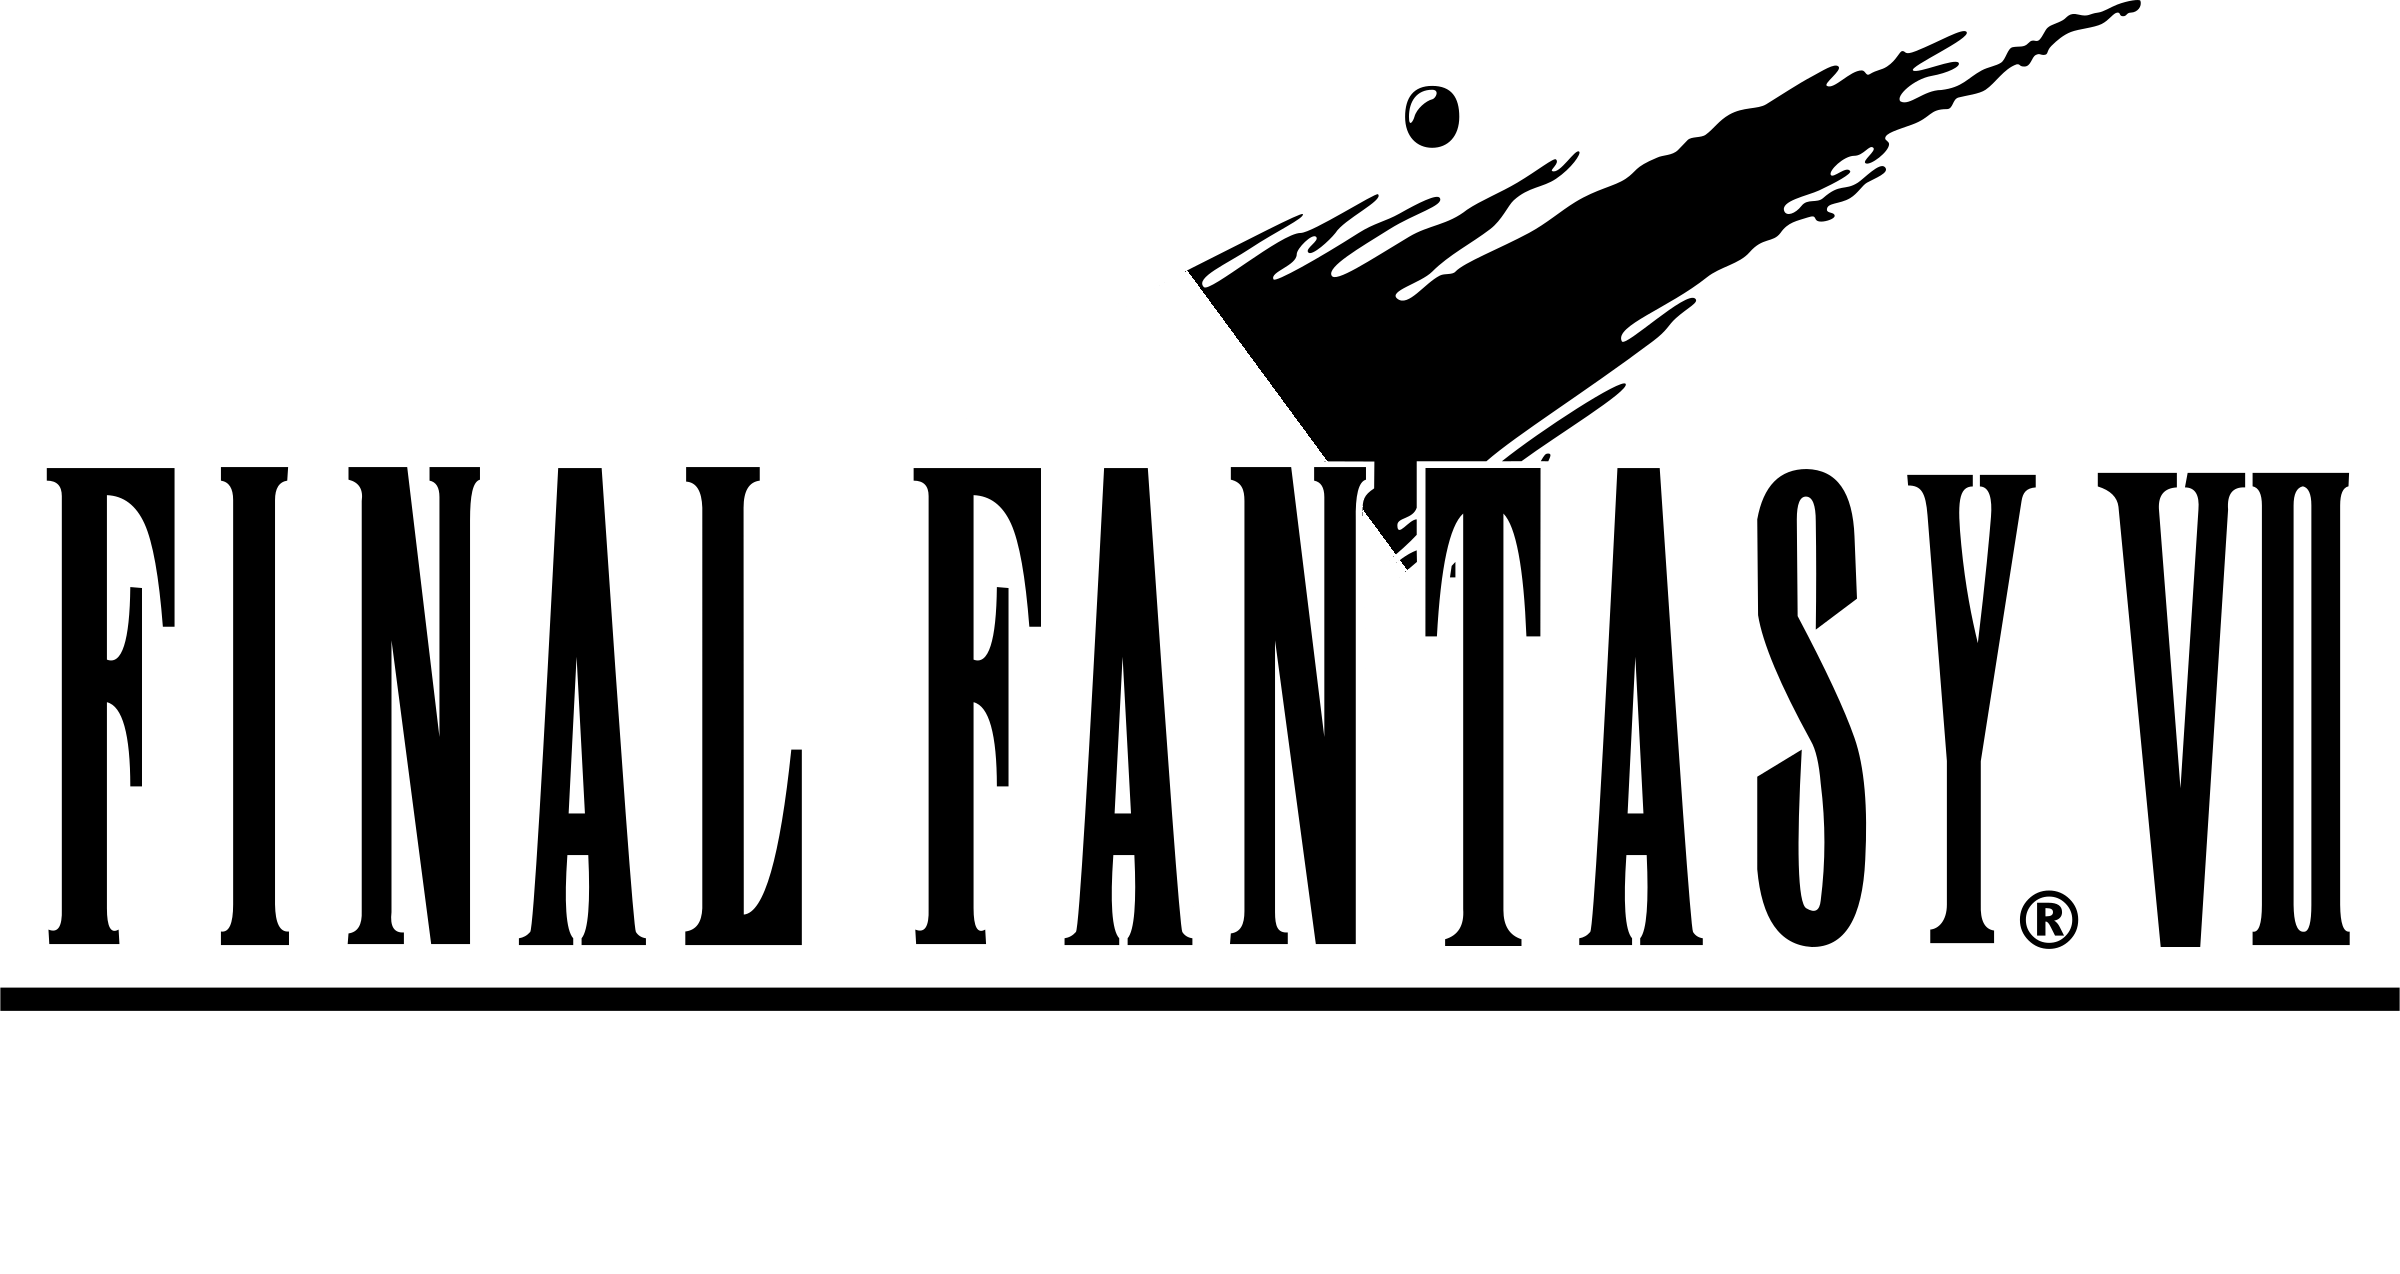 Final Fantasy Logo PNG Image Background